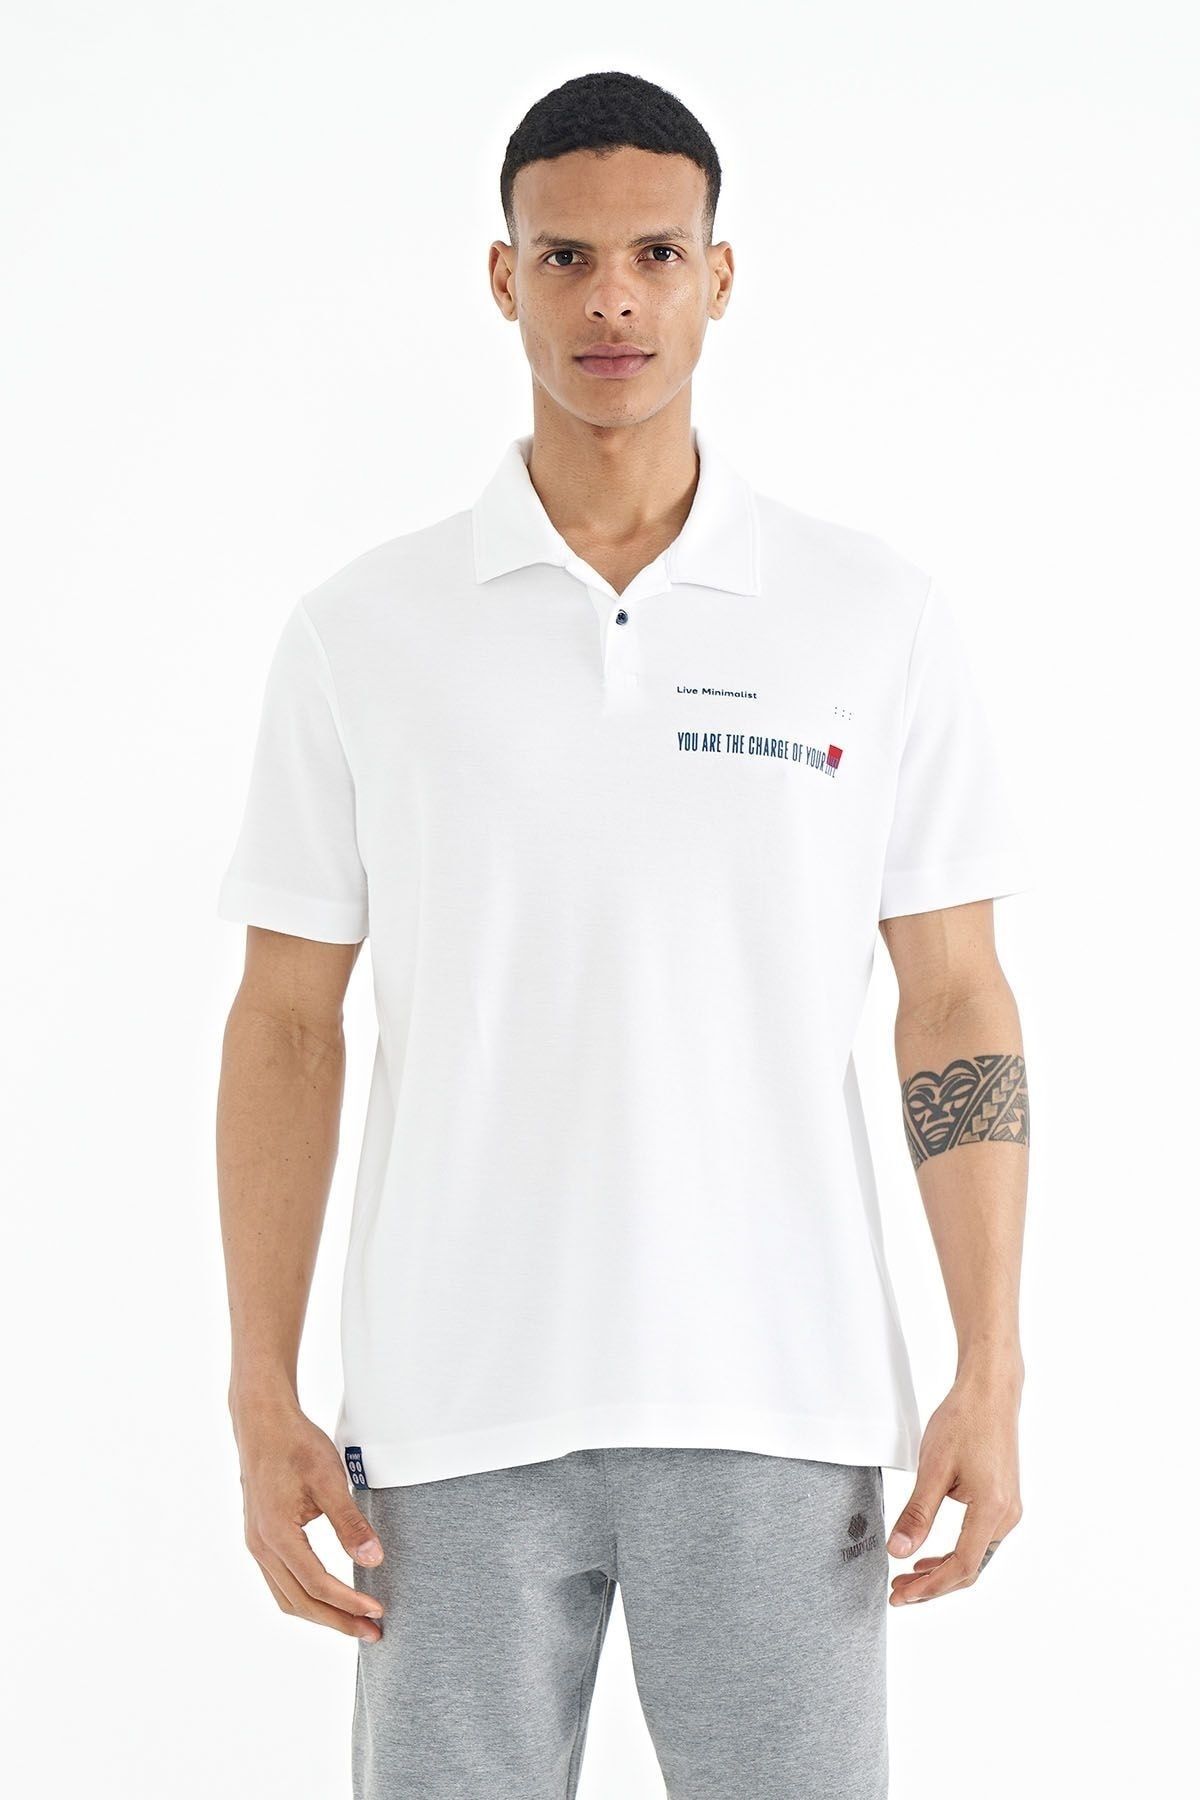 TOMMY LIFE Beyaz Yazı Baskılı Standart Form Polo Yaka Erkek T-shirt - 88236